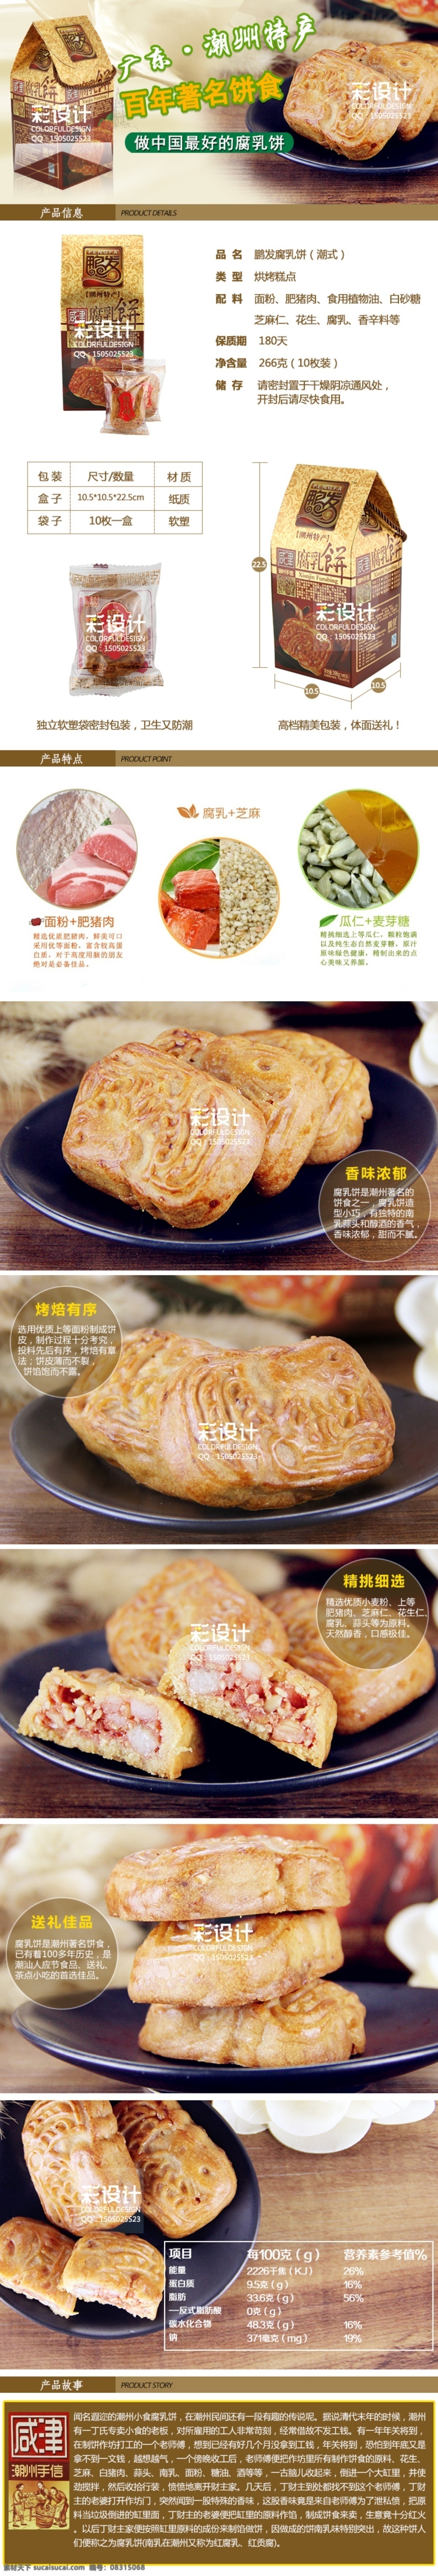 潮州 特产 胡 荣泉 腐乳 饼 详情 页 食品安全 创意 细节 展示 描述 包装设计 美味海报 白色